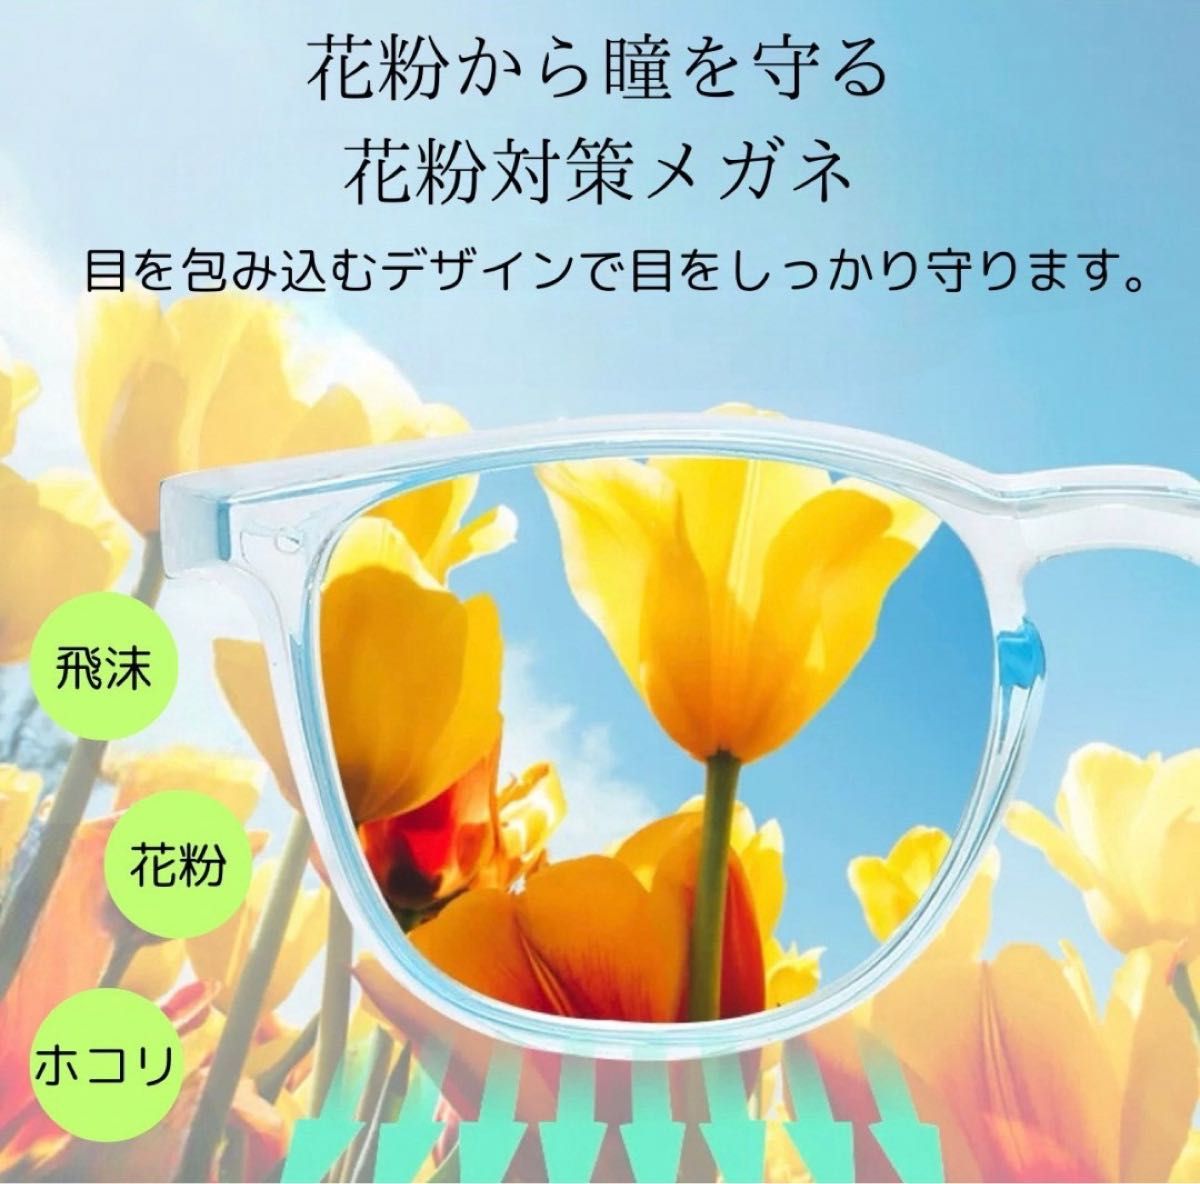 49花粉症メガネ 保護メガネ 飛沫対策 ブルーライトカット UVカット 多機能